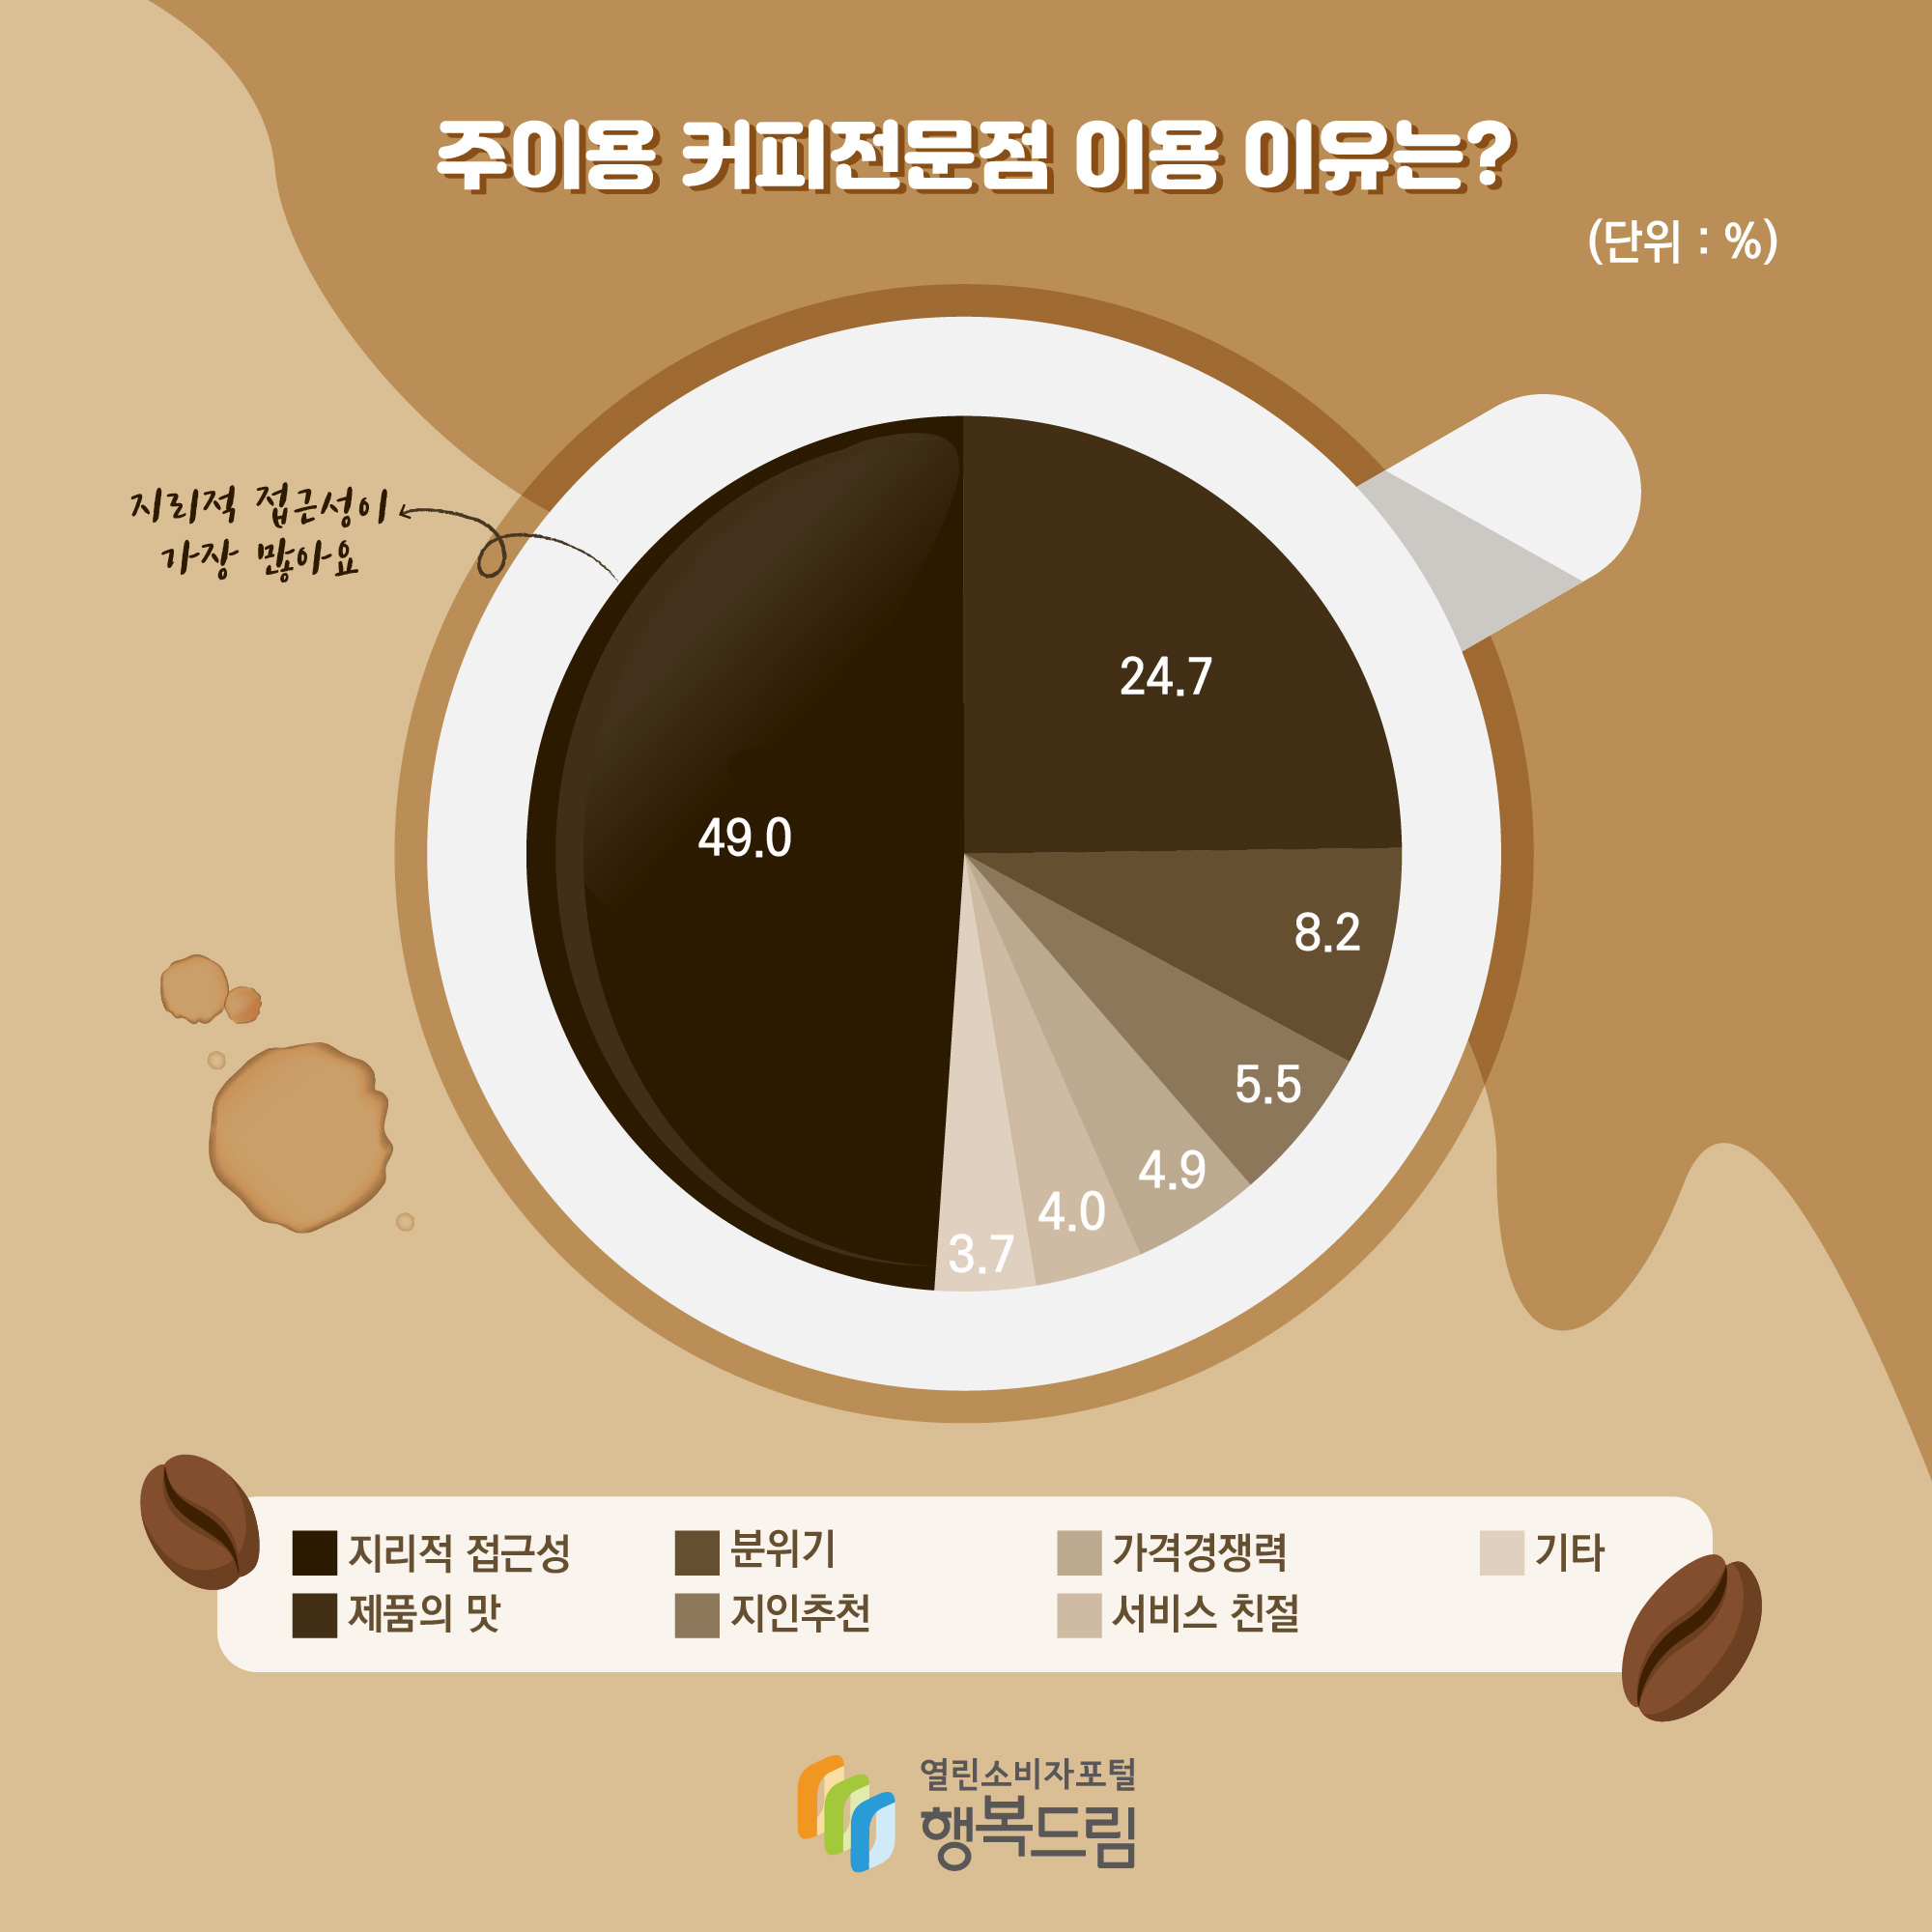 # 주이용 커피전문점 이용 이유는? (단위: %) 지리적 접근성 49.0 지리적 접근성이 가장 많아요 제품의 맛 24.7 분위기 82. 지인추천 5.5 가격경쟁력 4.9 서비스 친절 4.0 기타 3.7